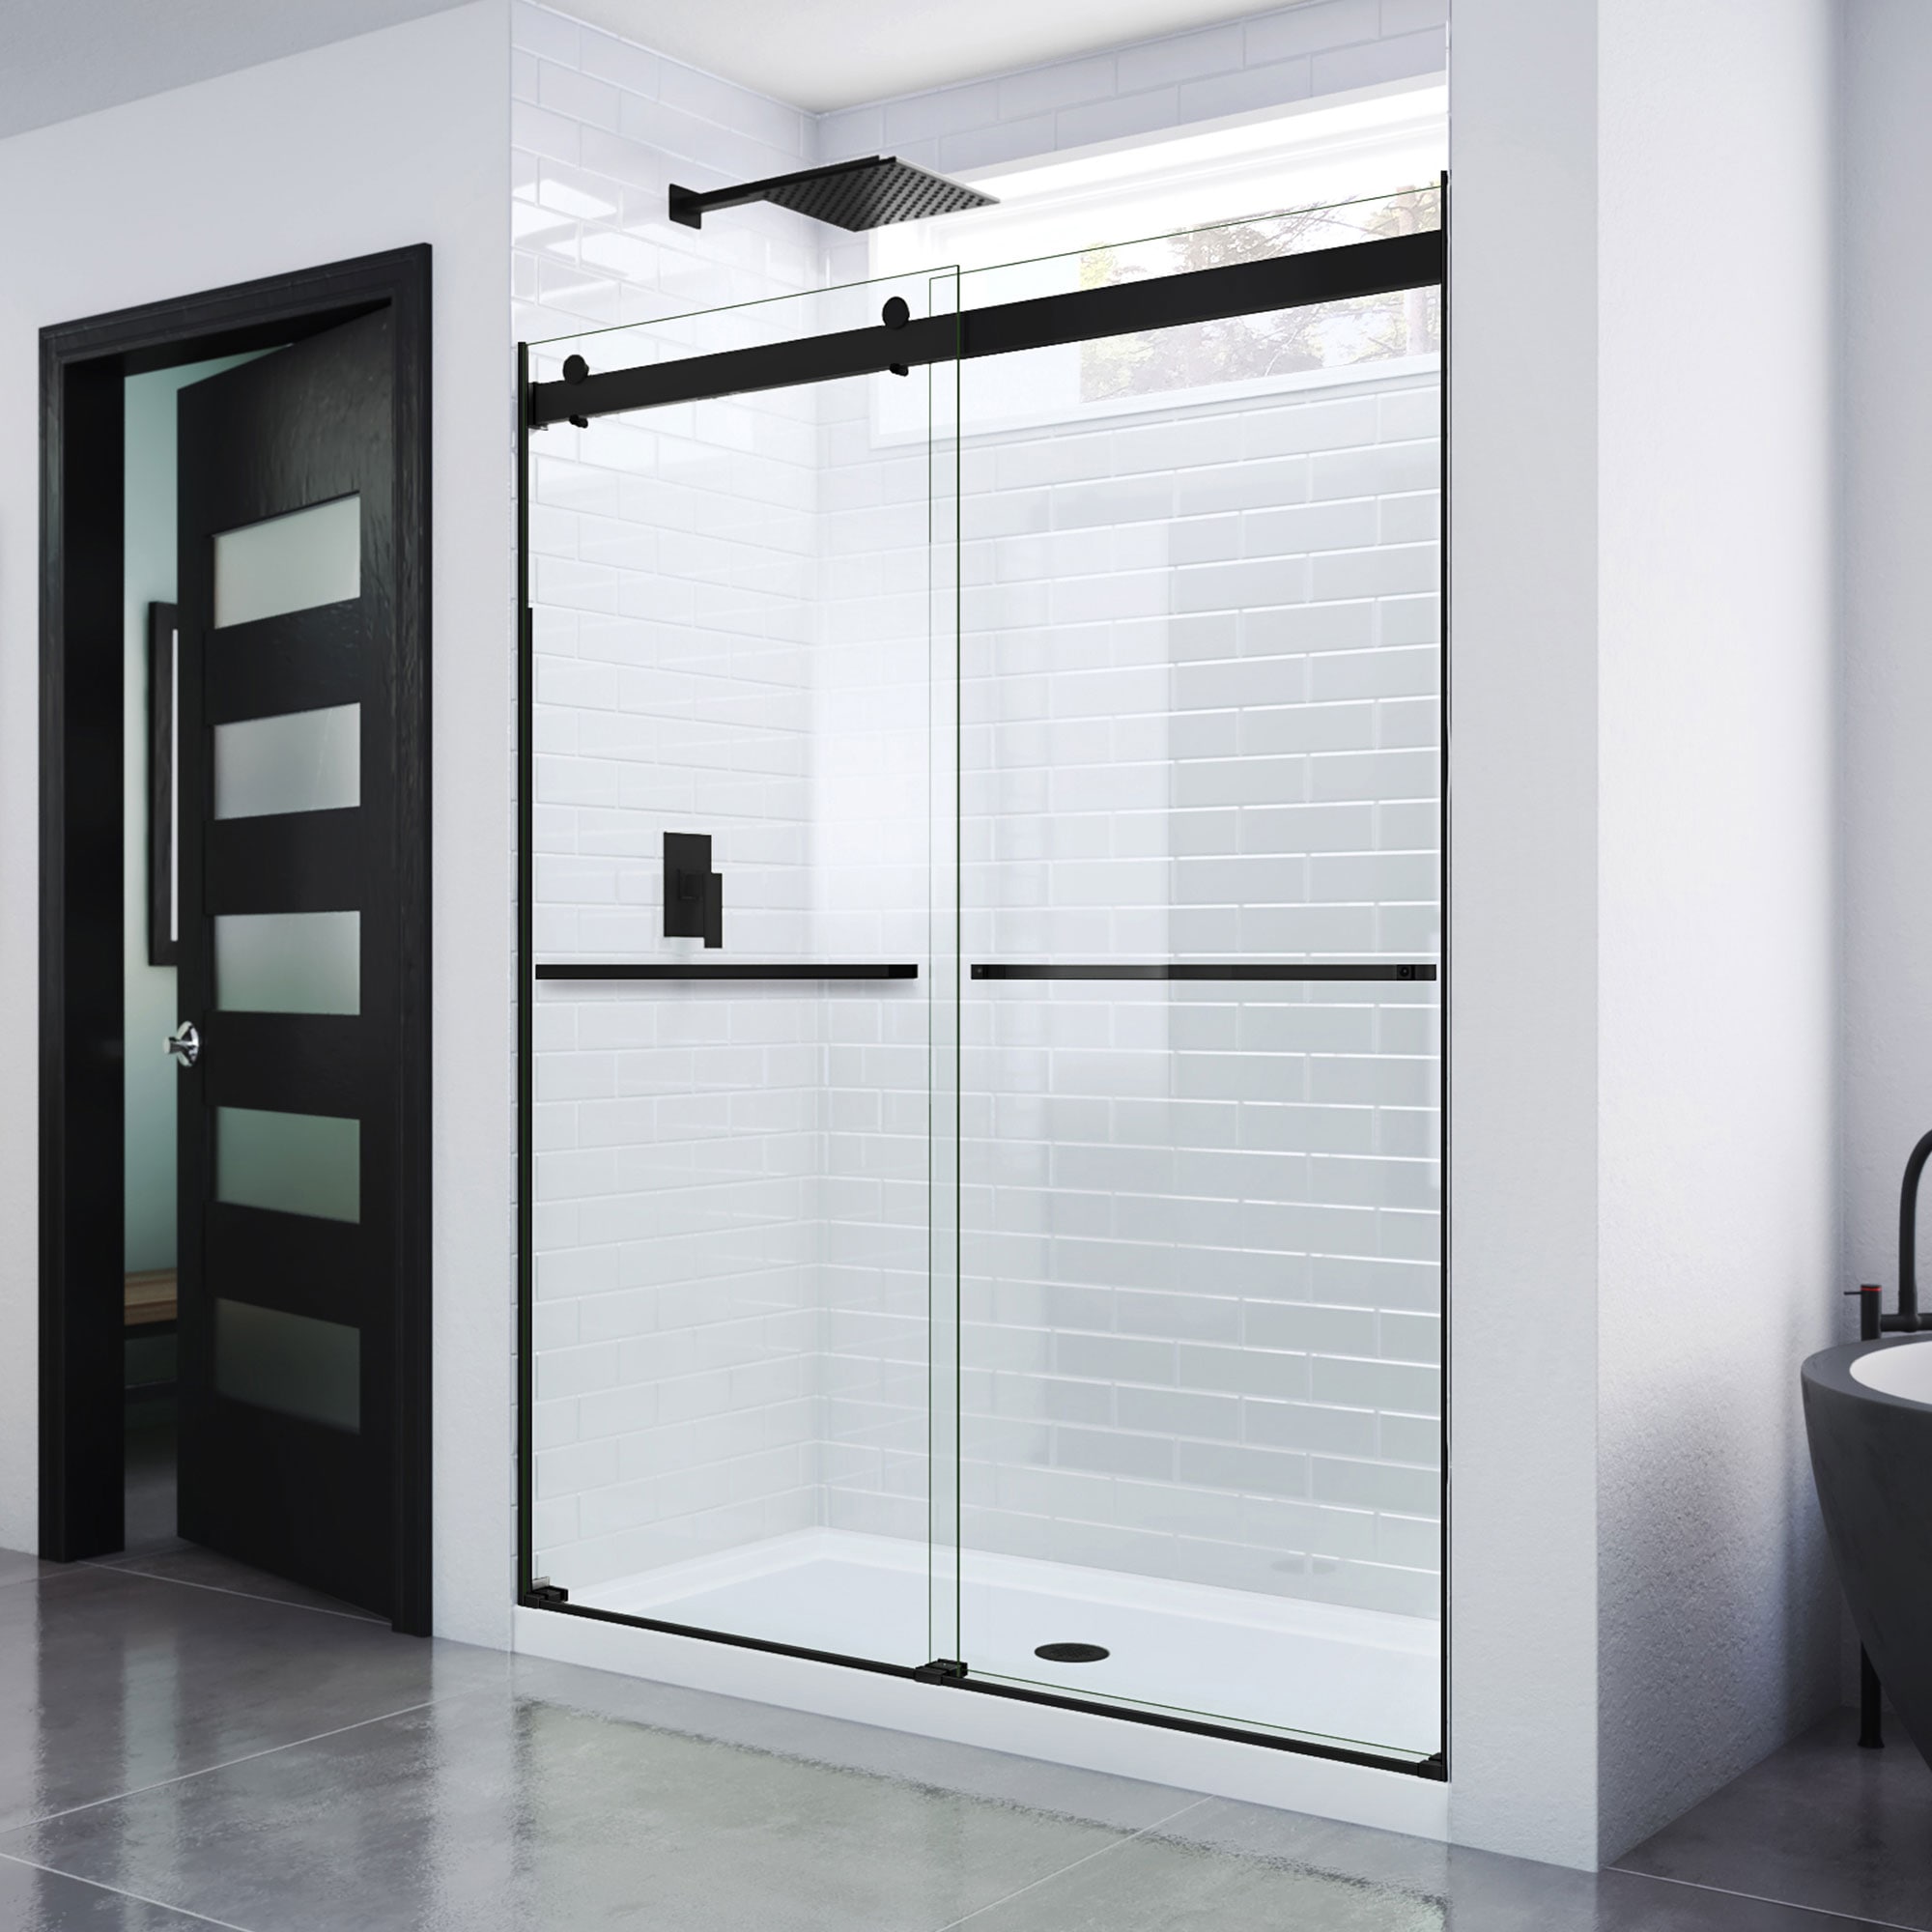  CHOMP! Shower Door Water Repellent: Healthier Home